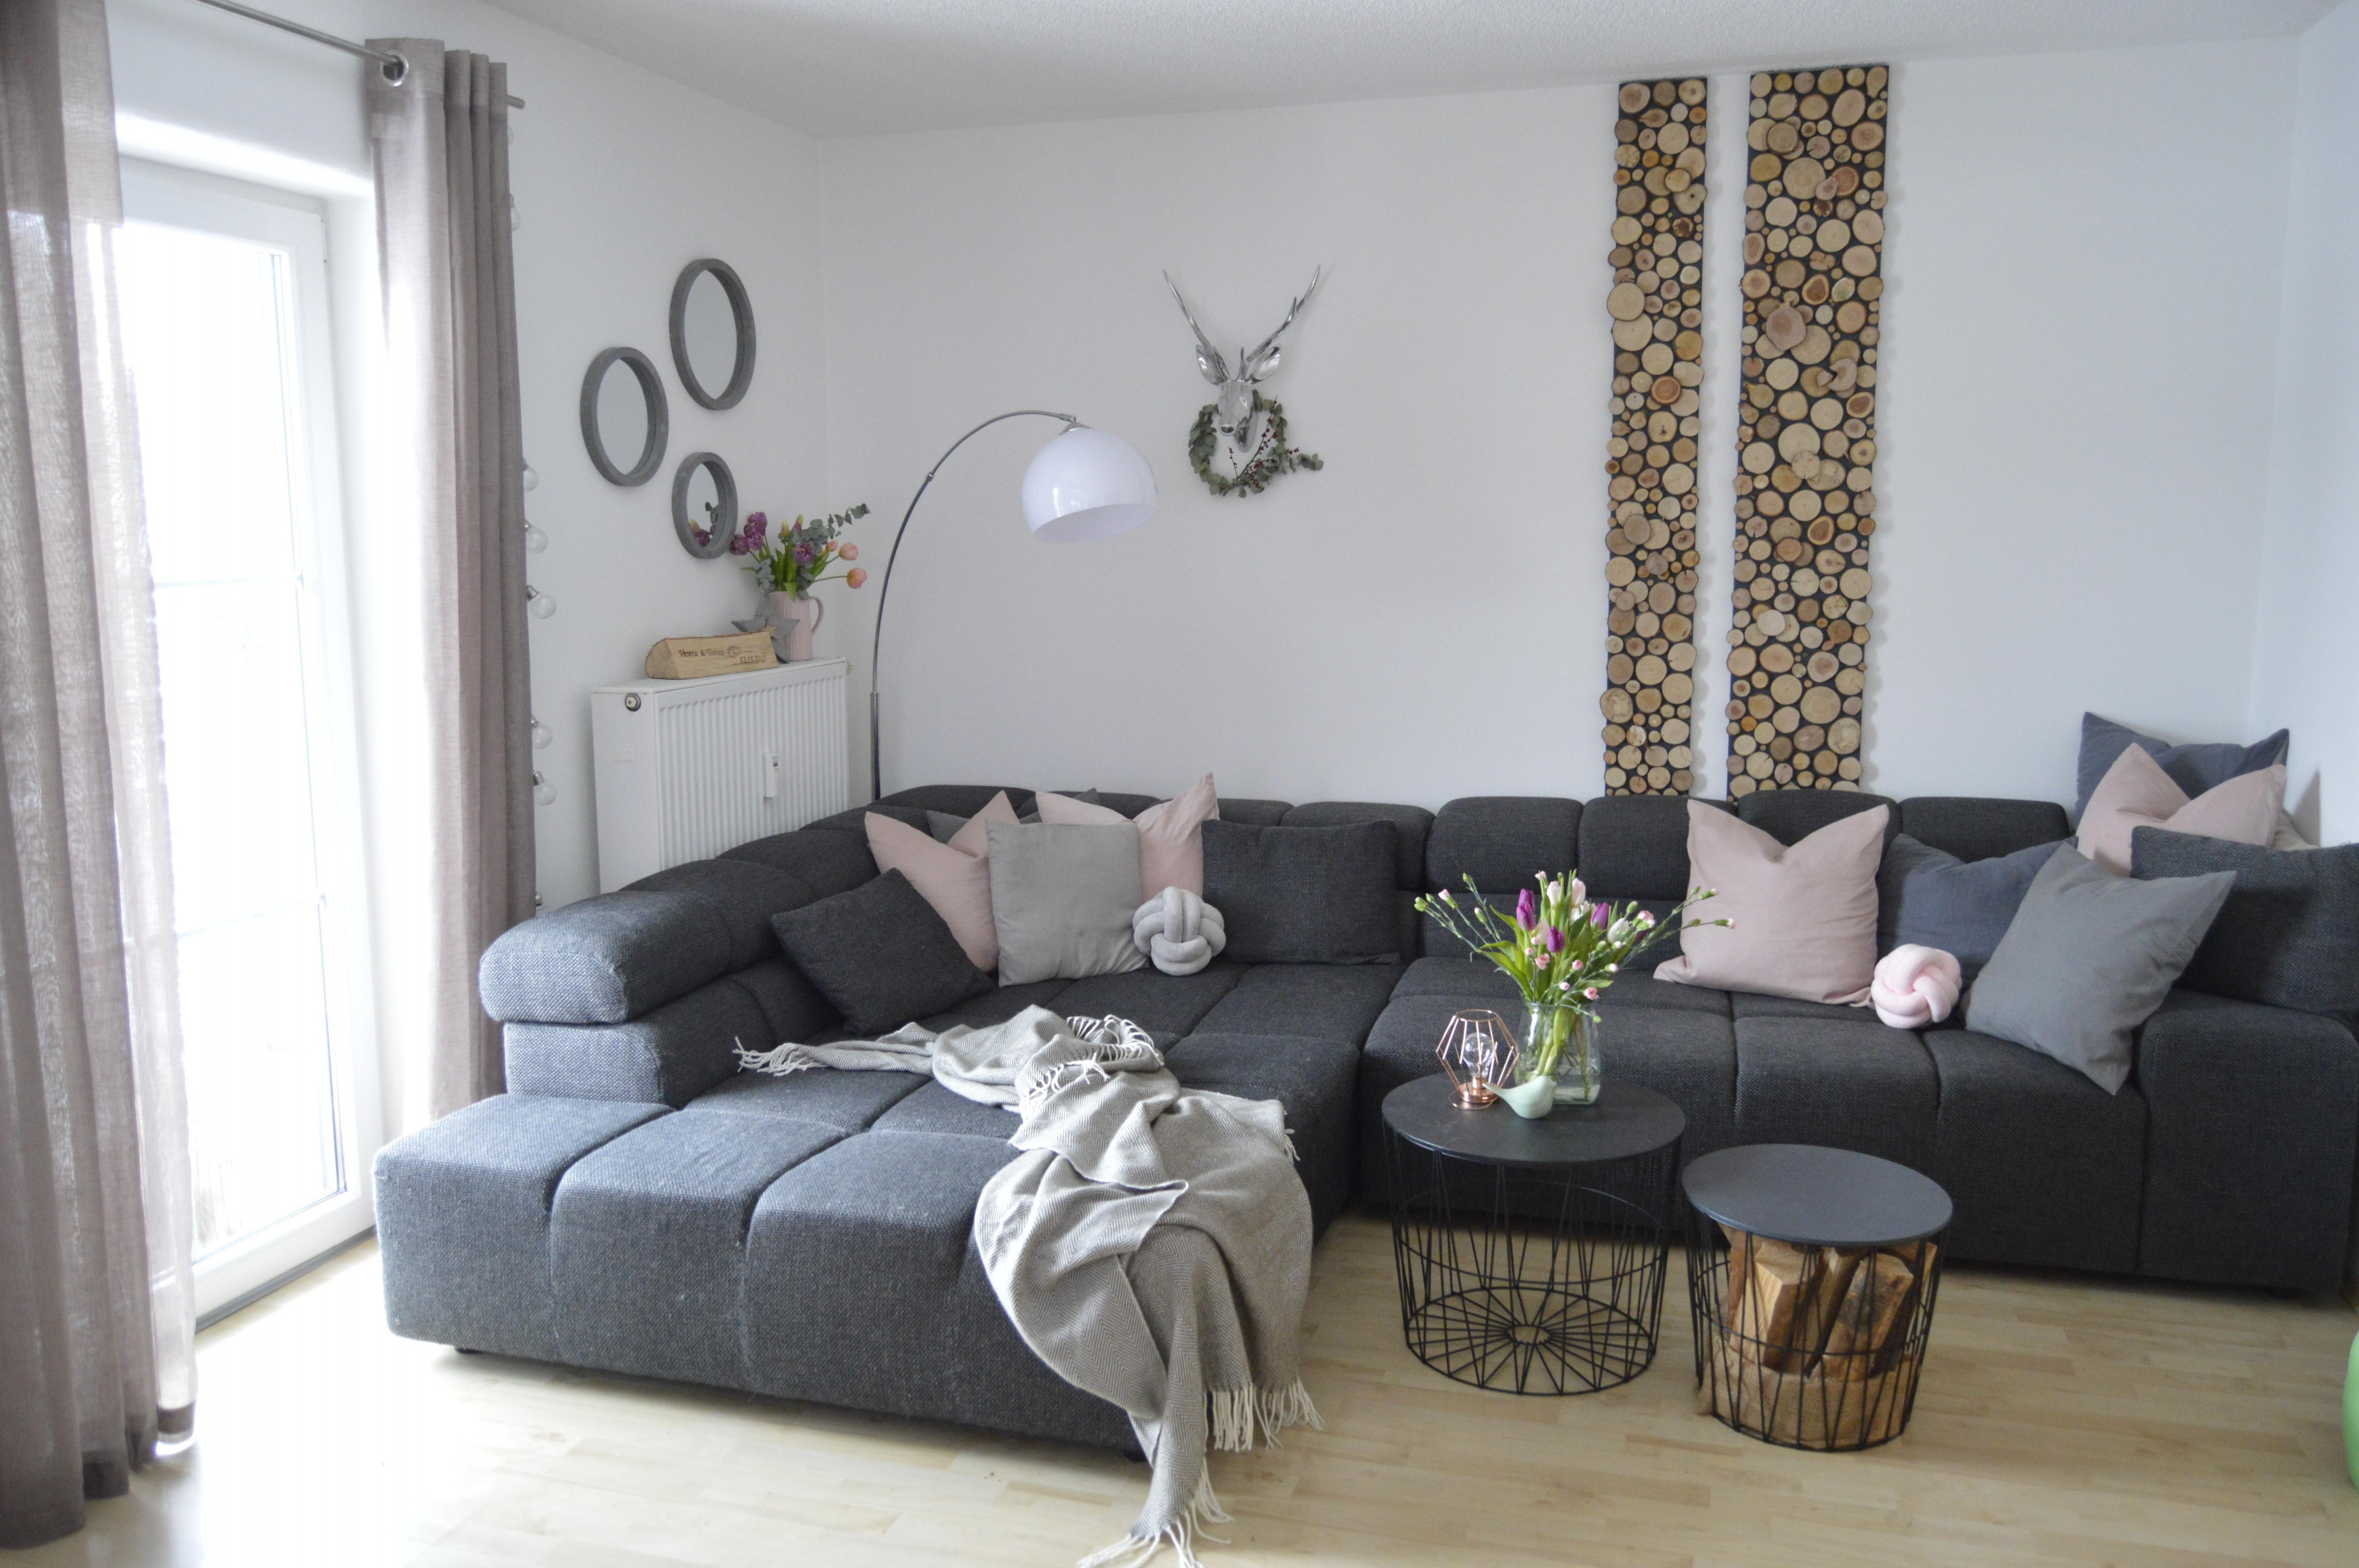 Holzwand Finde Gemütliche Ideen Mit Charme Bei Couch von Holz Deko Wohnzimmer Bild